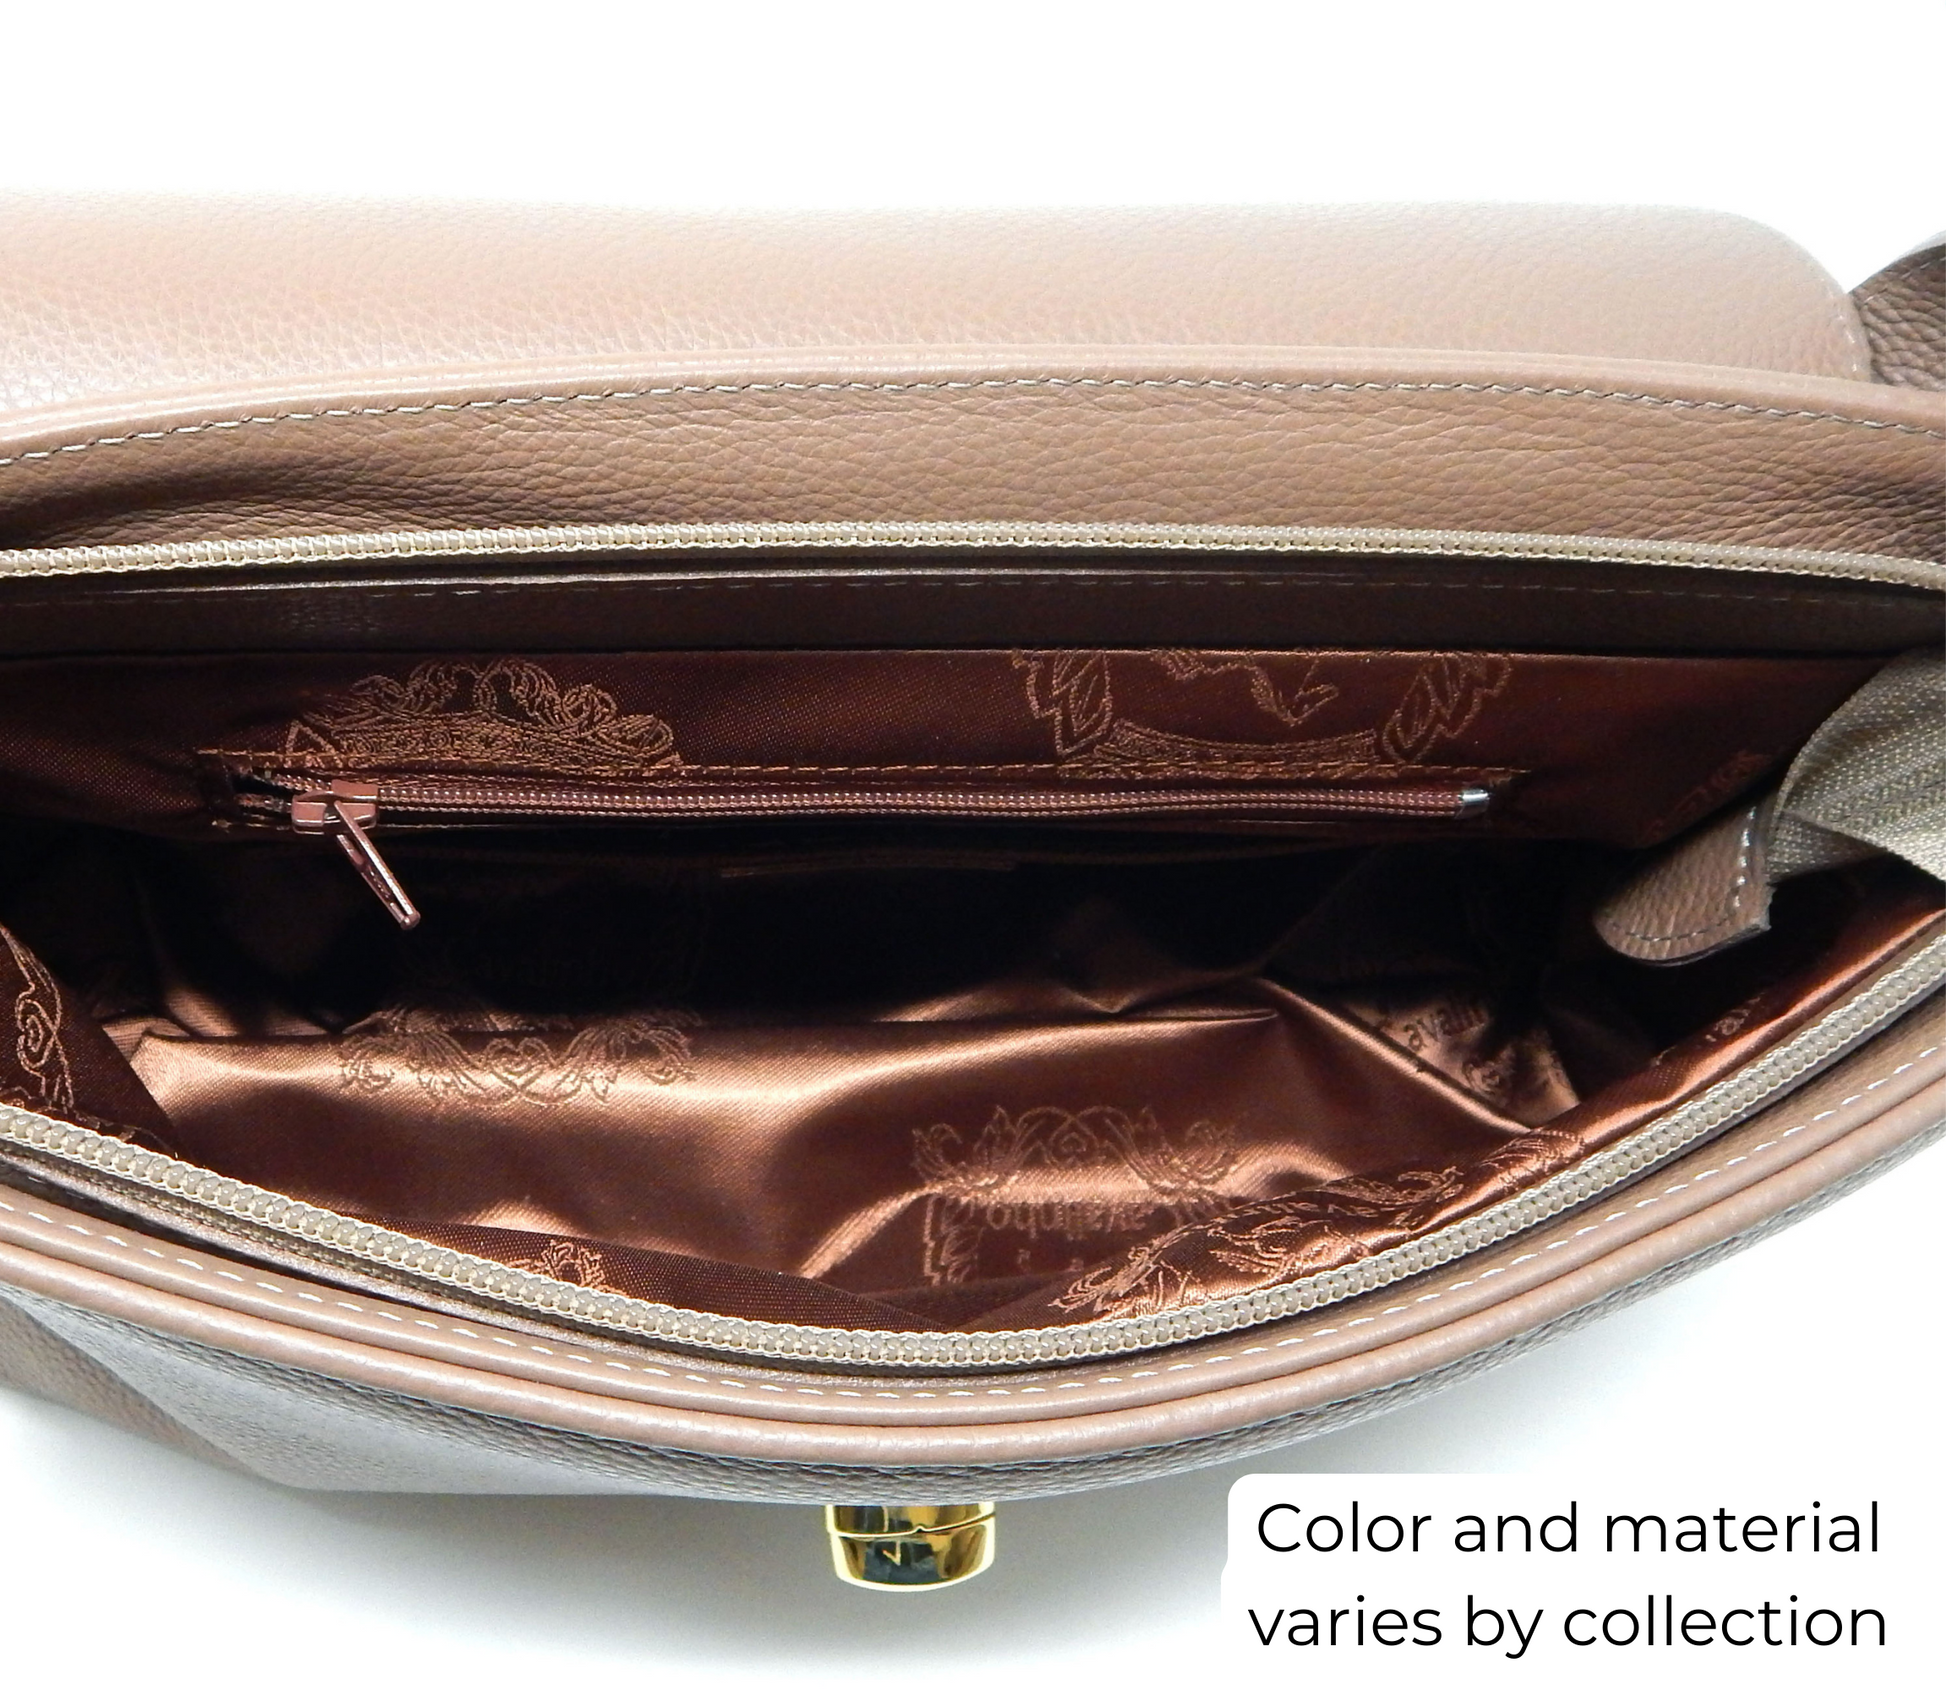 Cavalinho Mystic Handbag - Beige / White - inside_0514_26d71006-79af-4afe-aff5-32f7c2599501